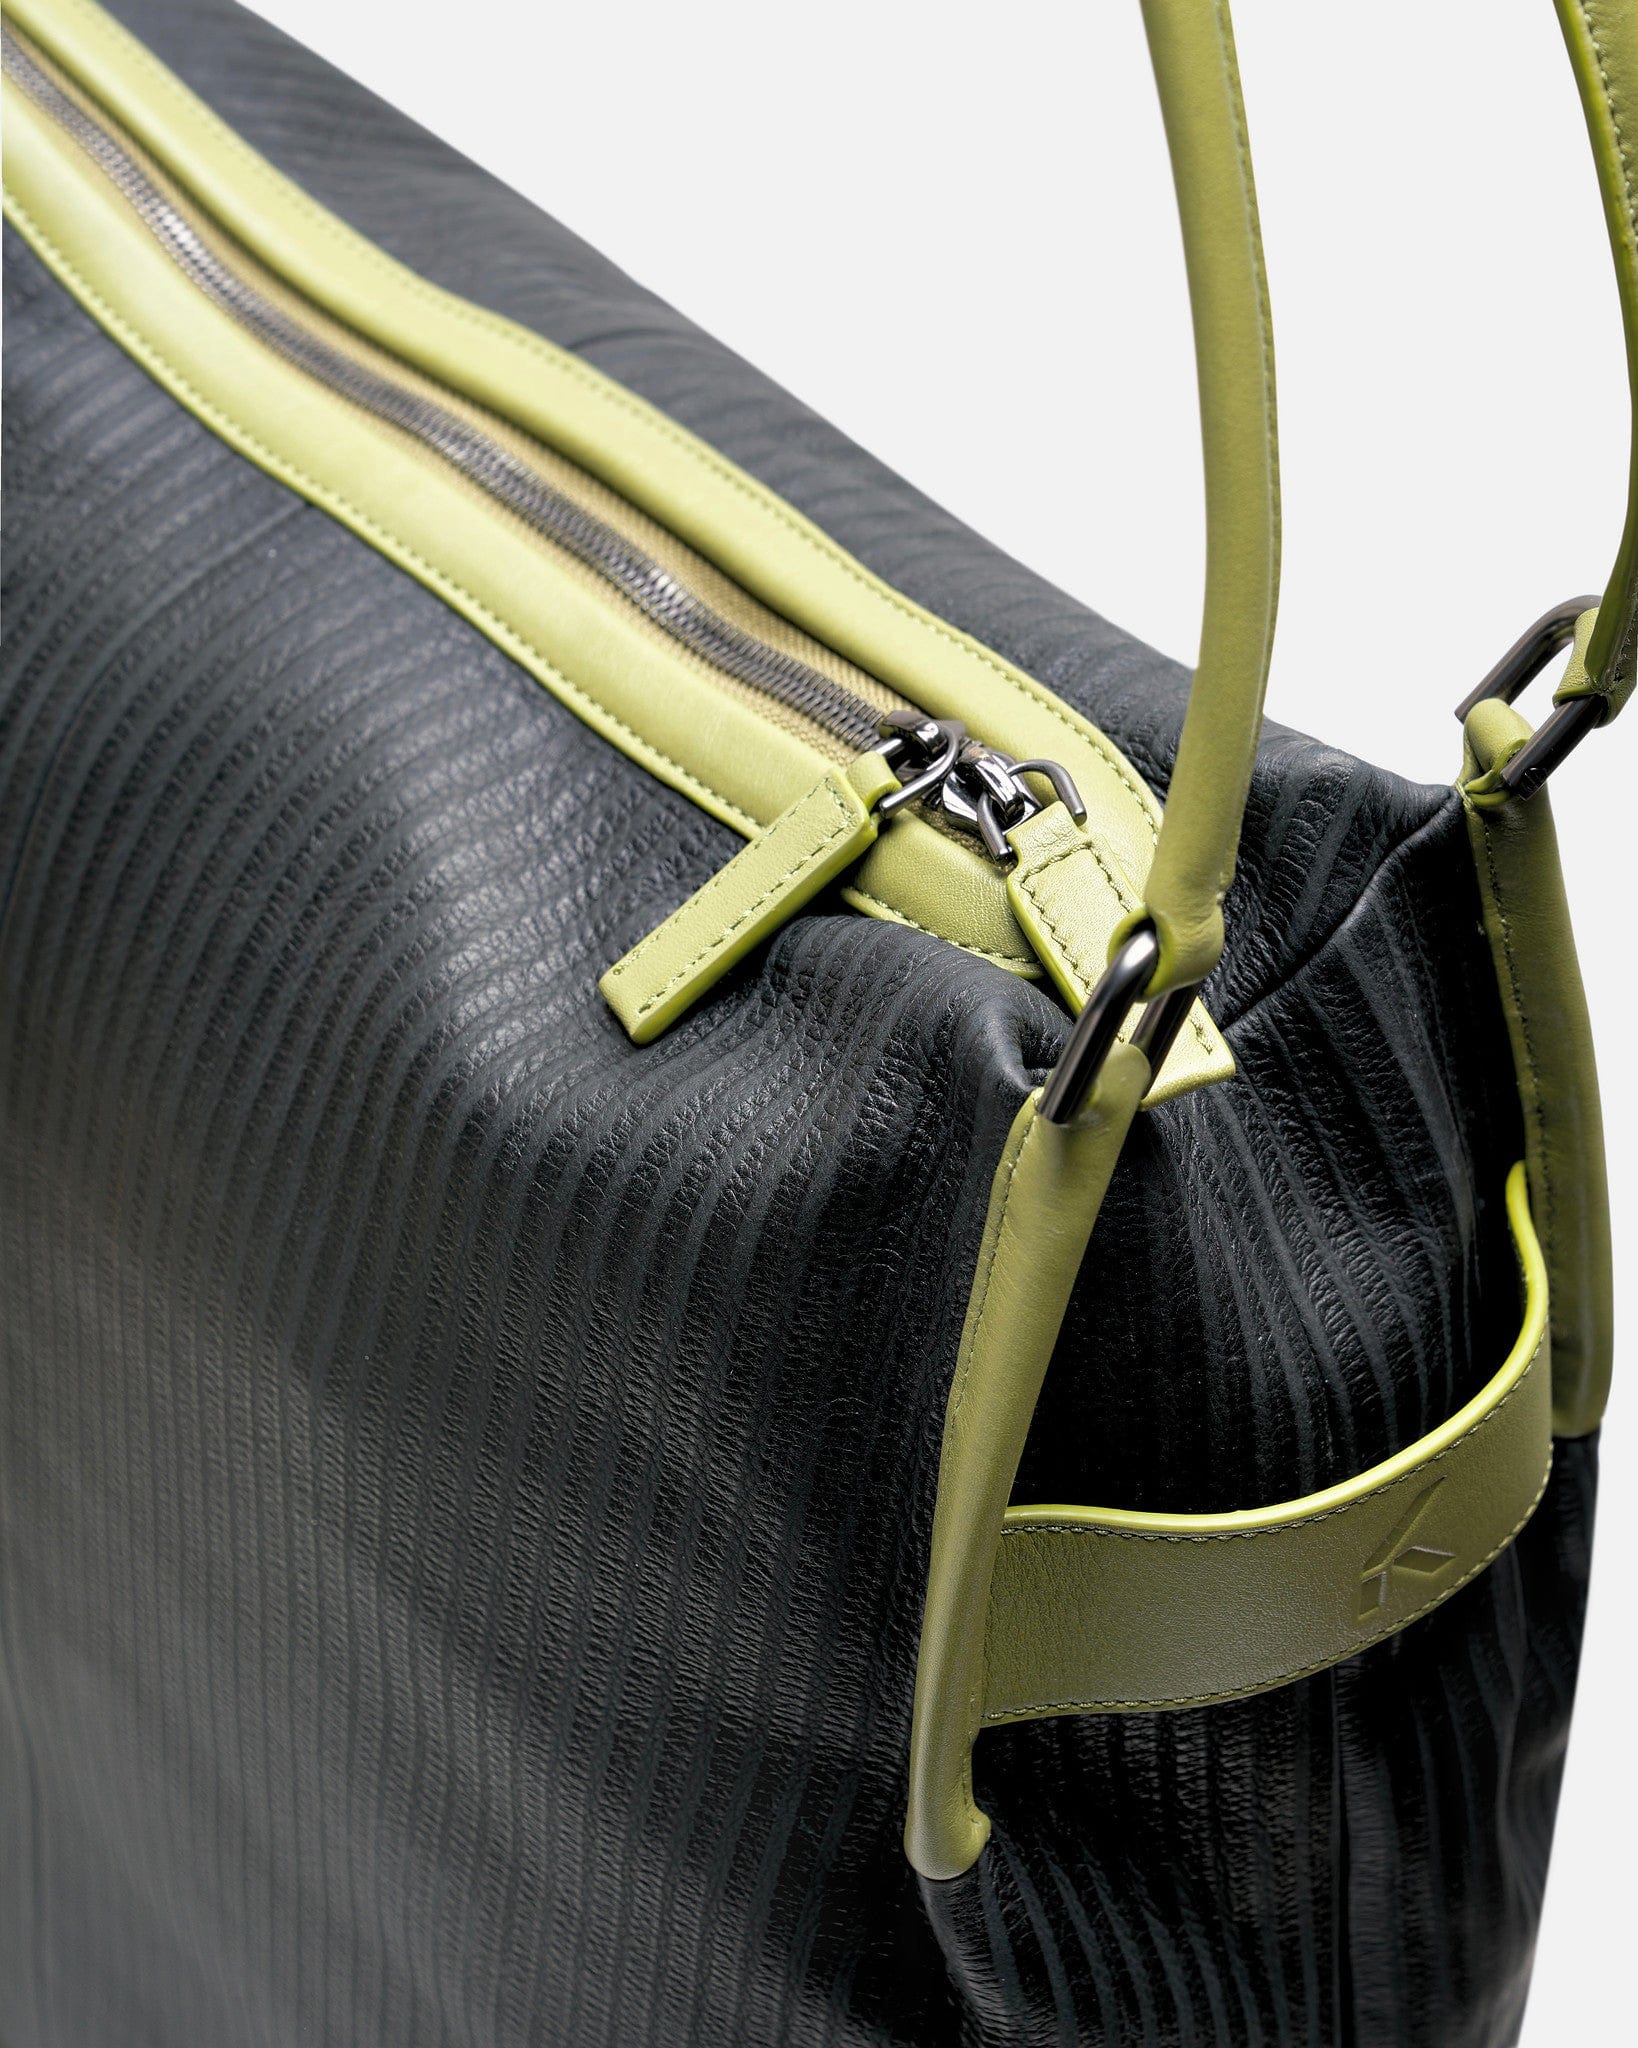 At.Kollektive Men's Bags O/S KIKO KOSTADINOV Inayat Carryall in Black/Turtle Green